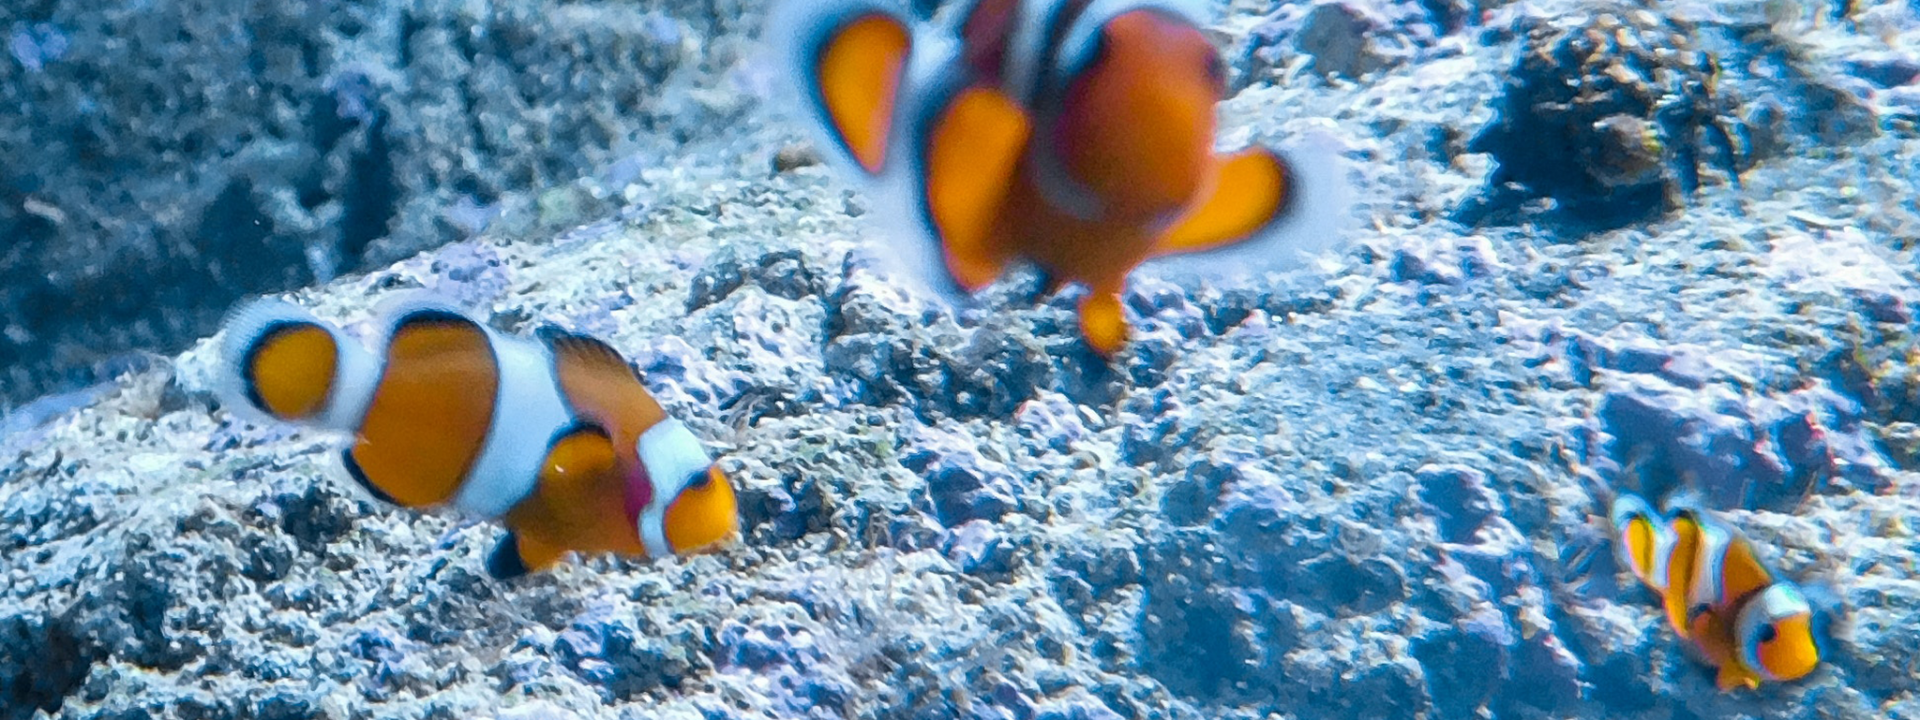 Foto: Fisch Nemo